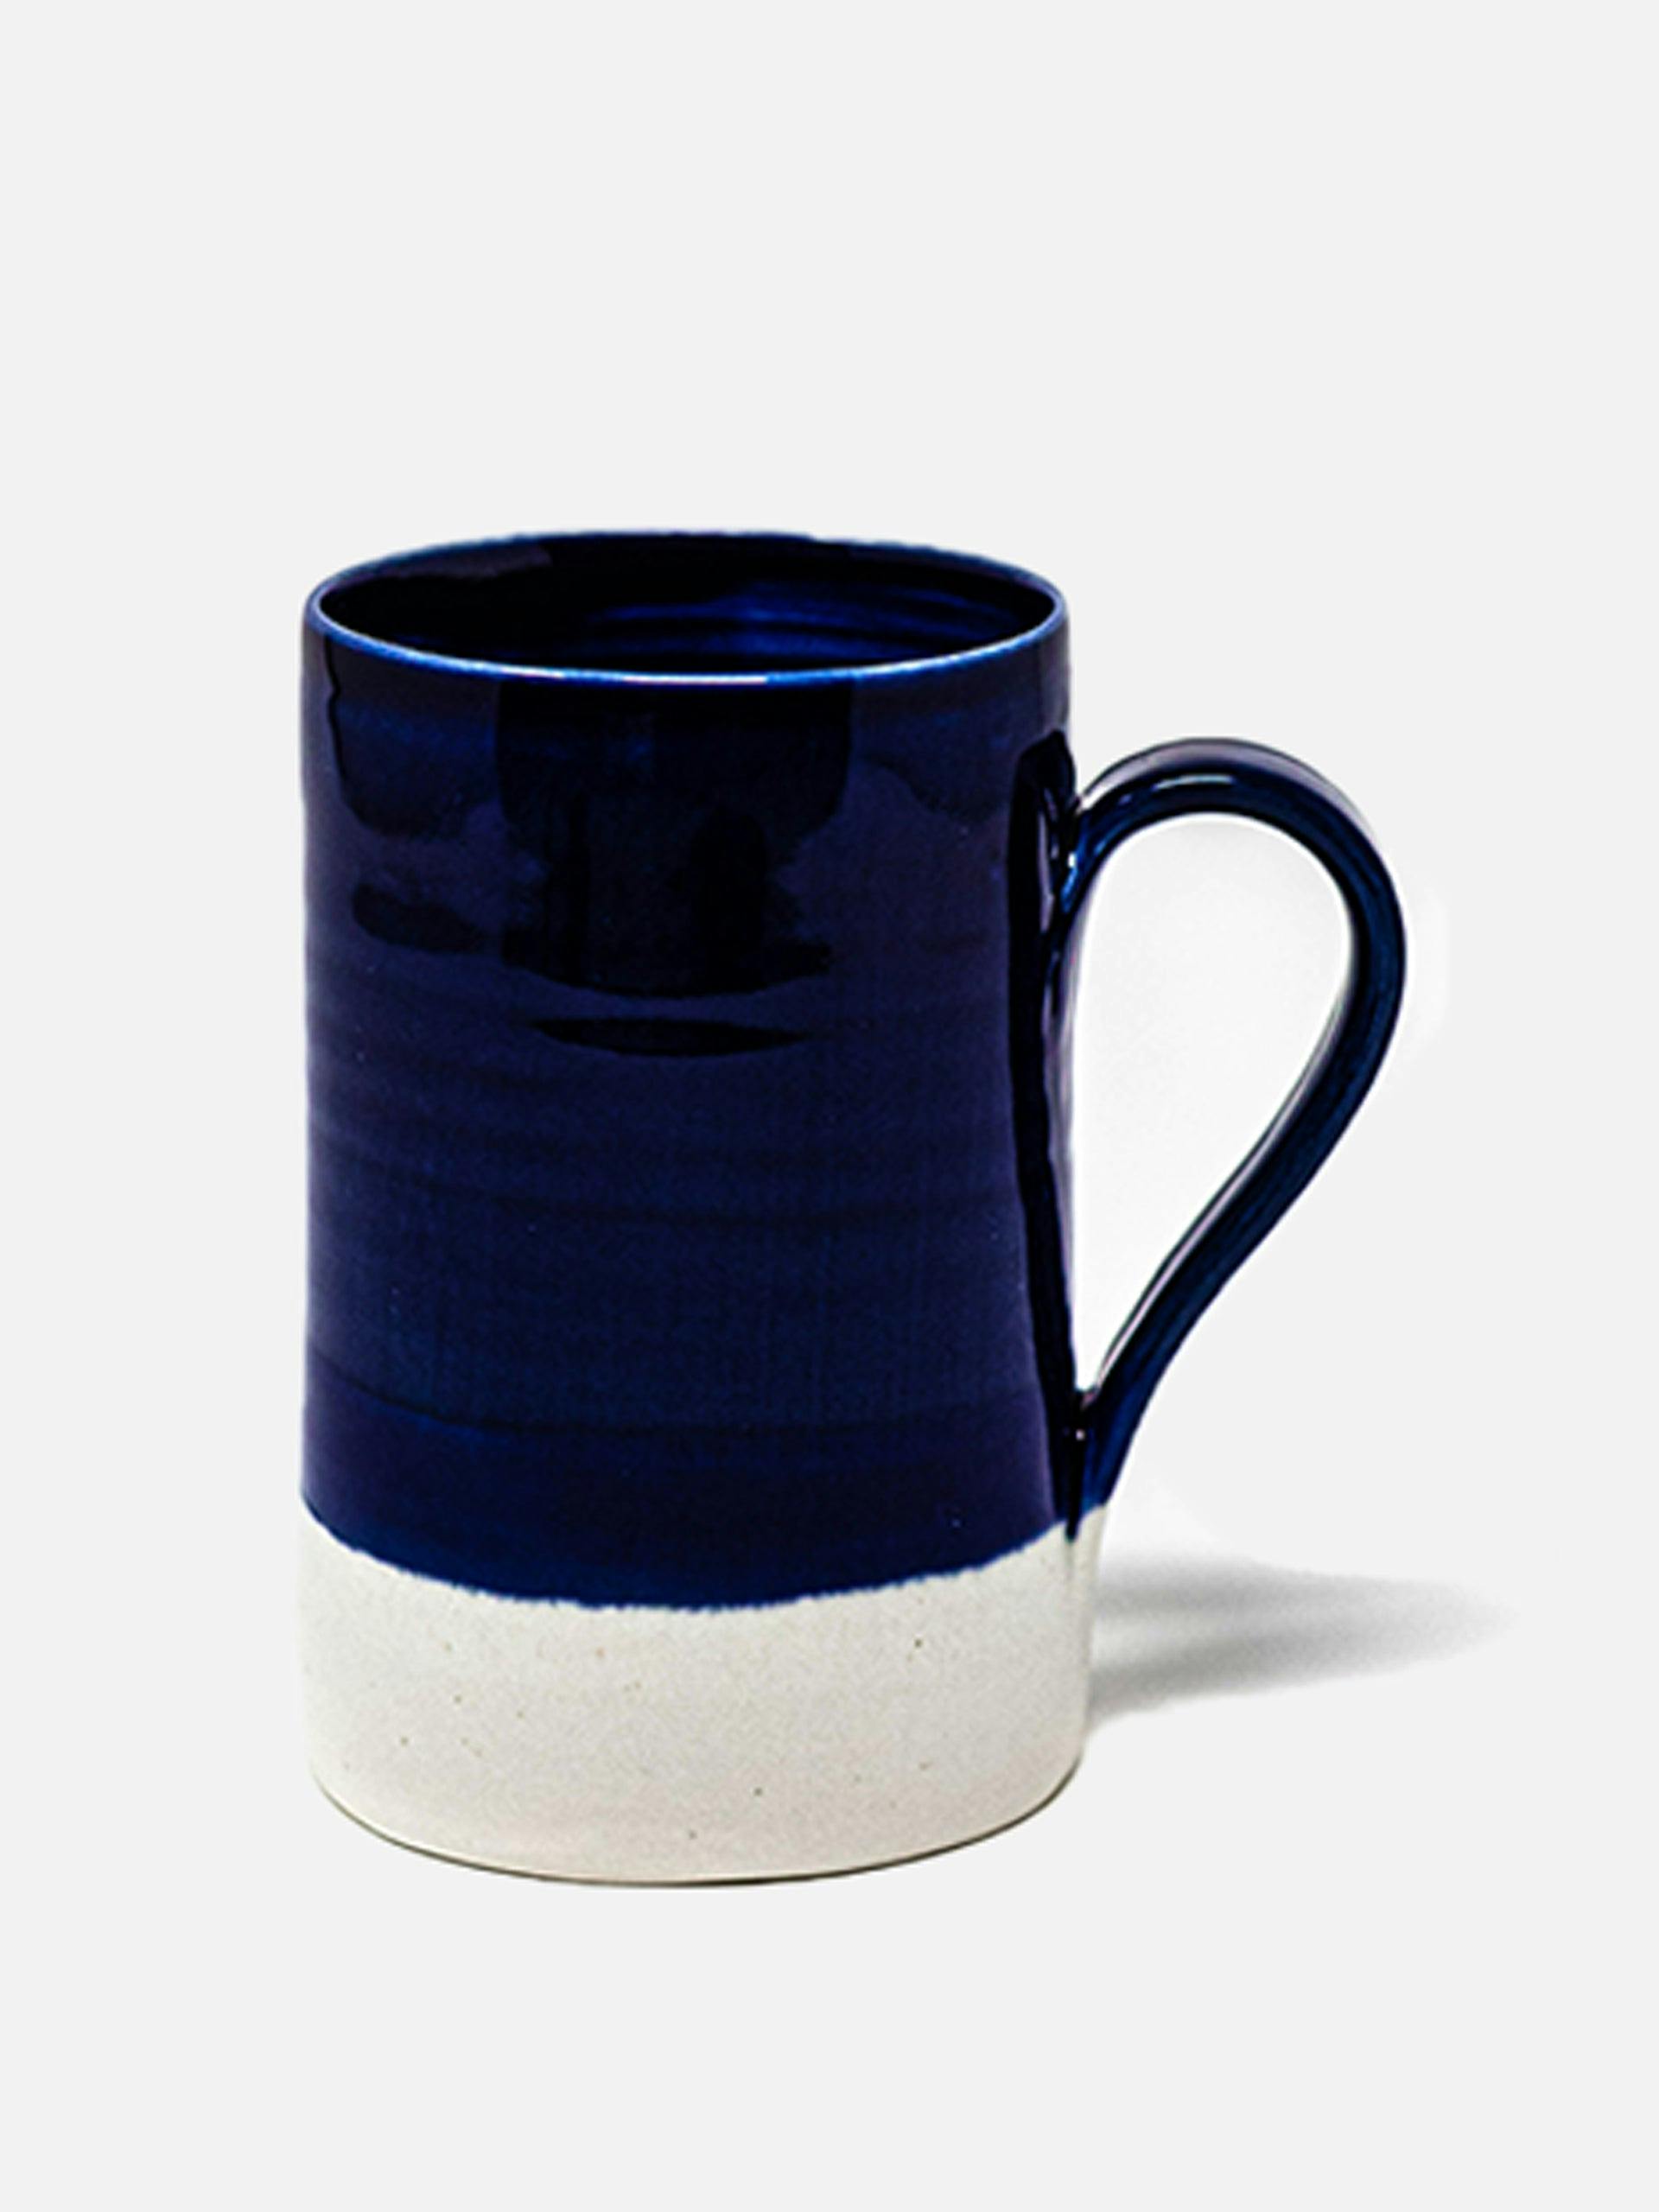 Hand-thrown glazed ceramic mug